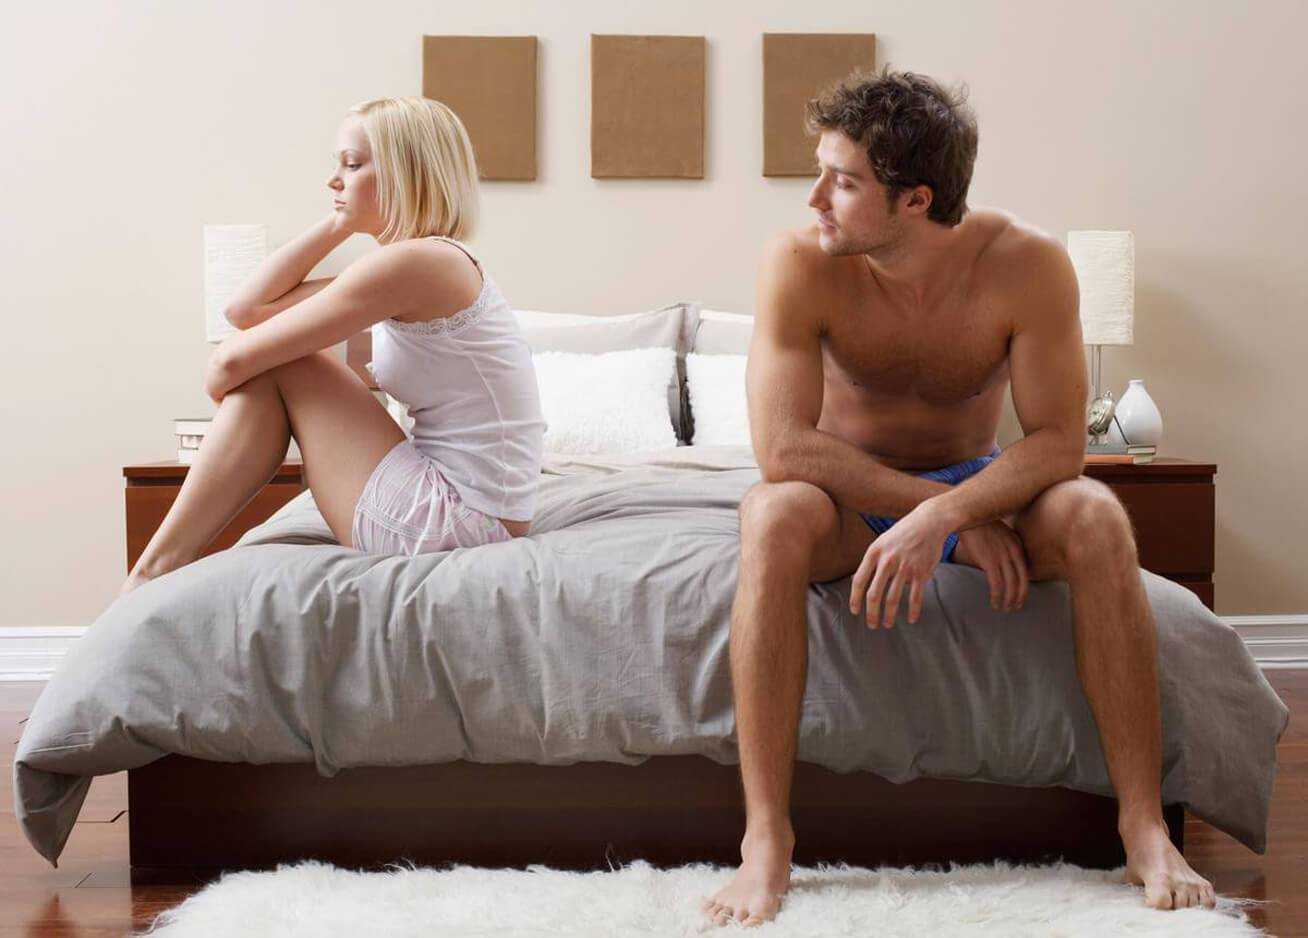 10 типичных ошибок, которые мы совершаем в начале отношений